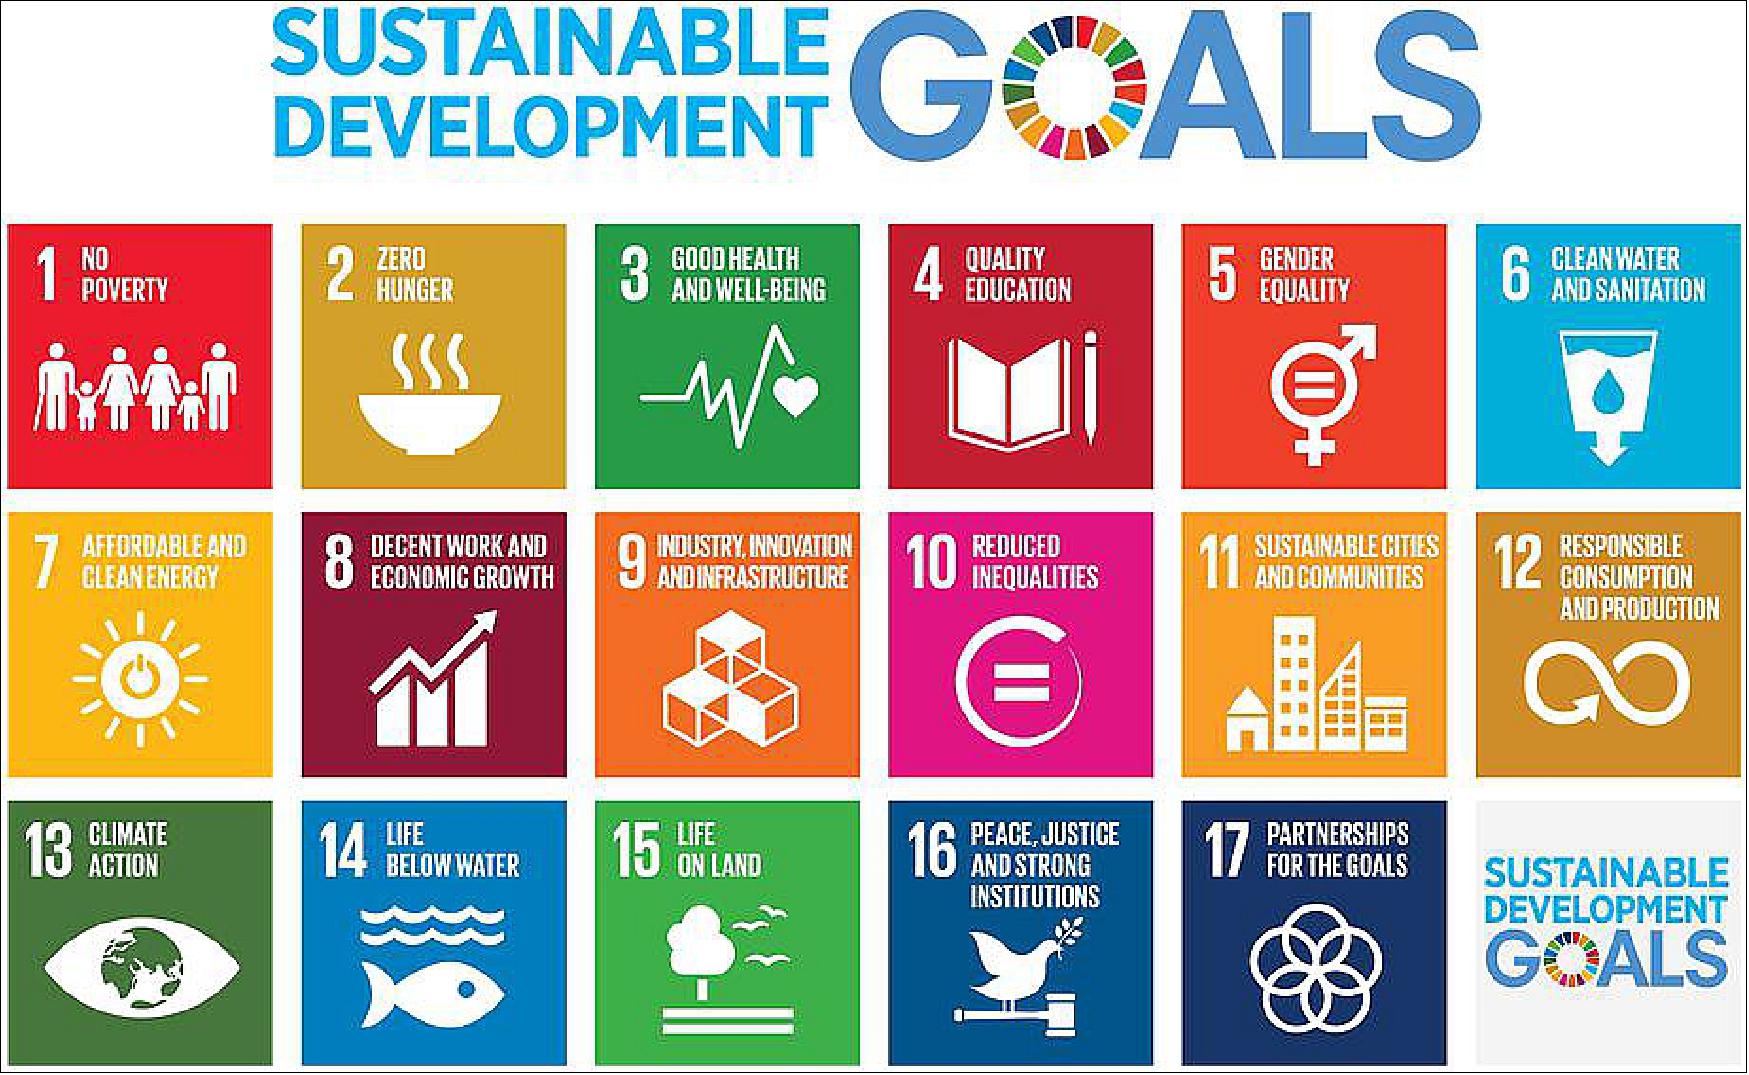 Figure 11: Sustainable Development Goals (image credit: UNOOSA)